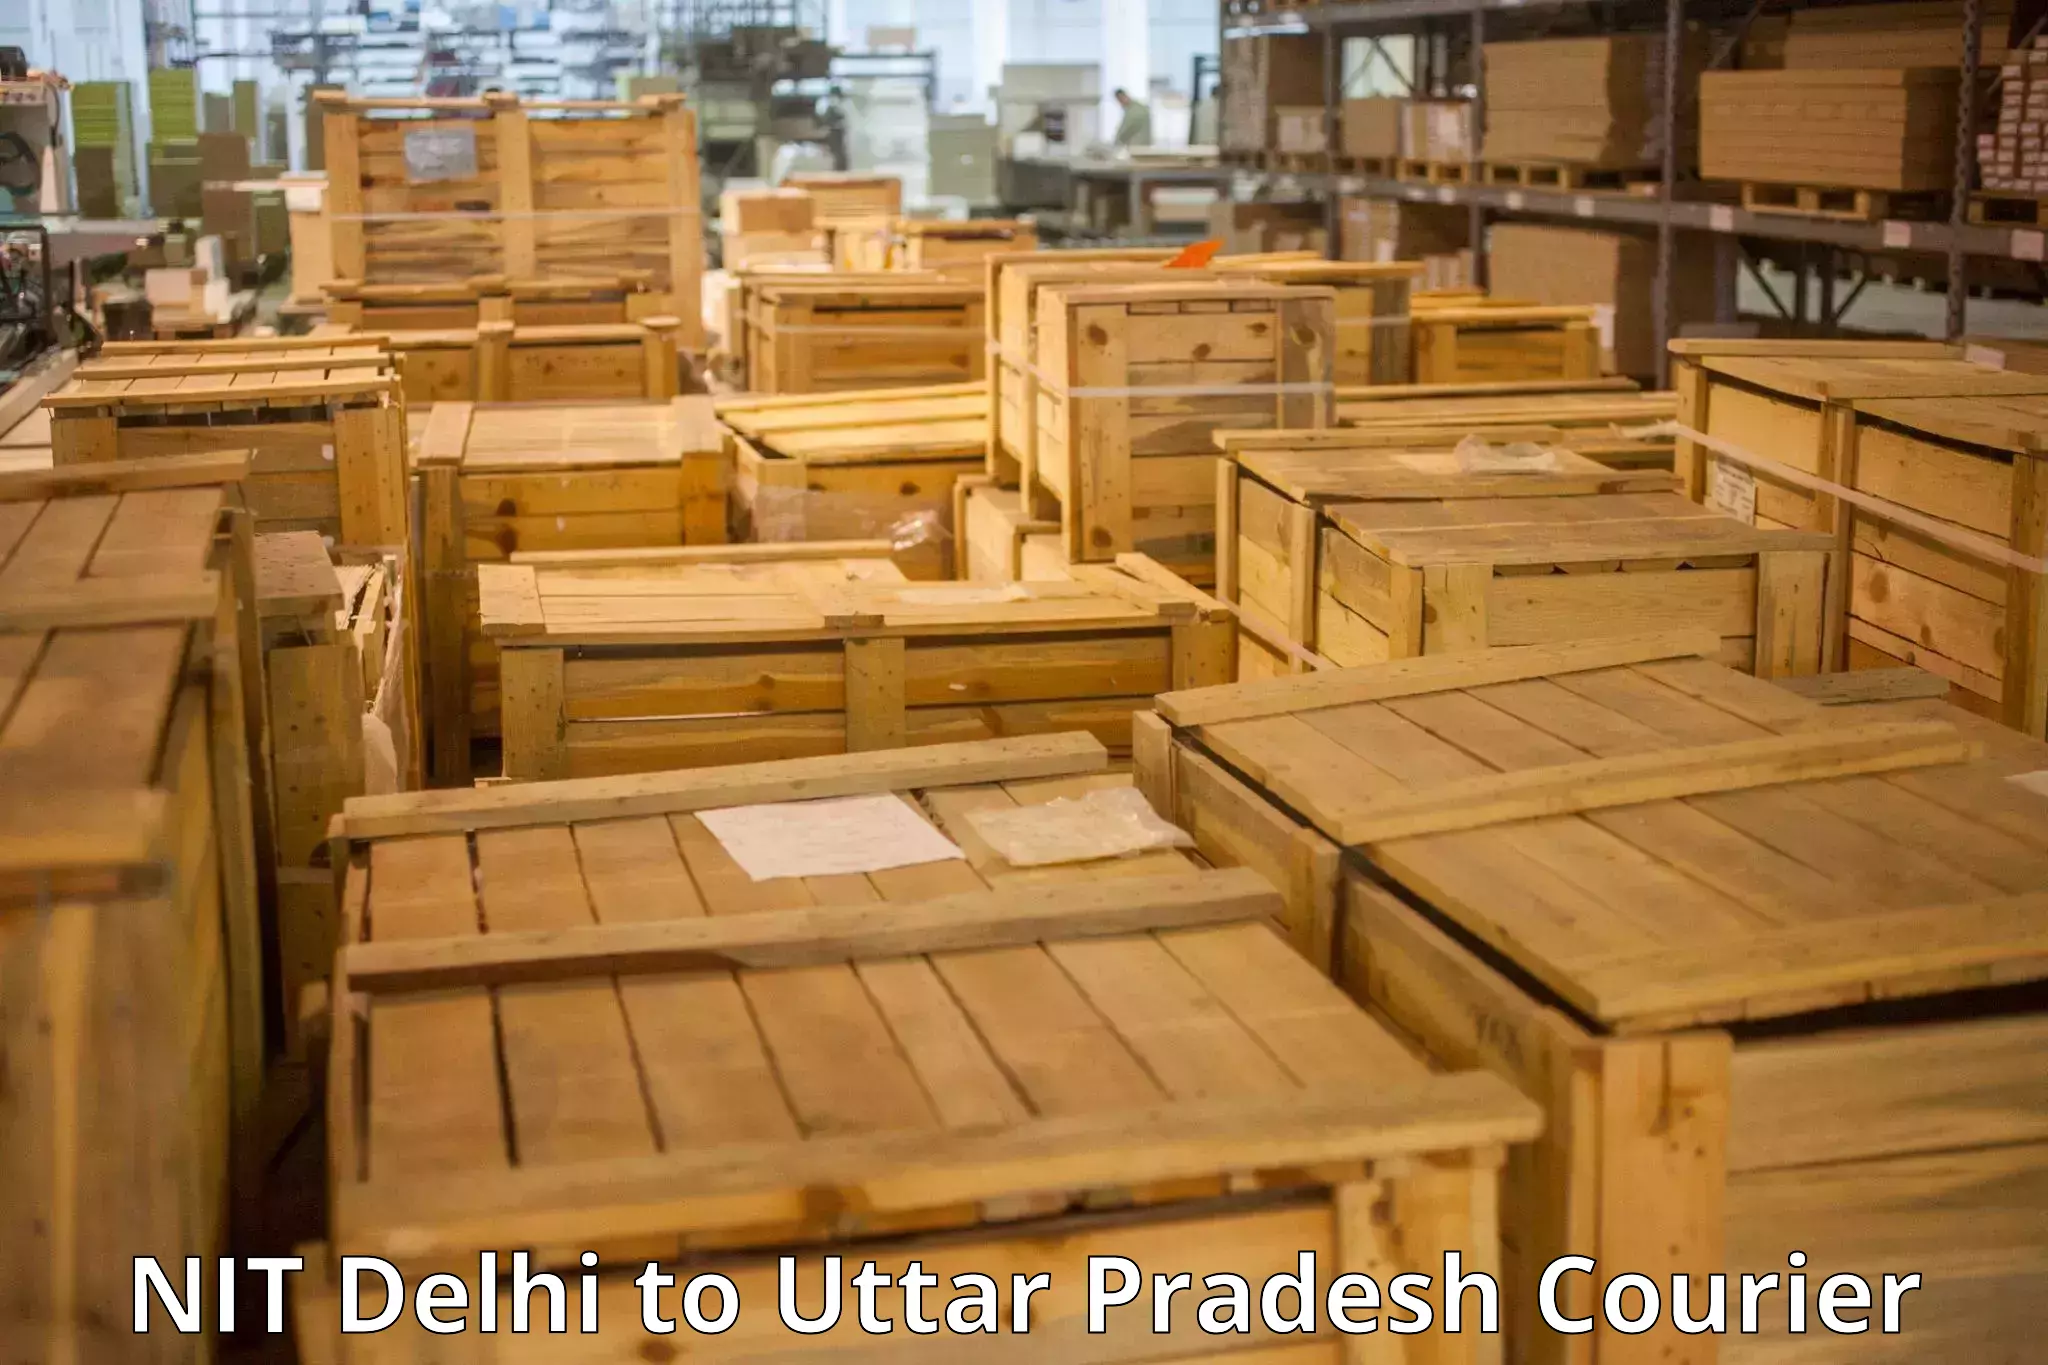 High-quality baggage shipment NIT Delhi to Nawabganj